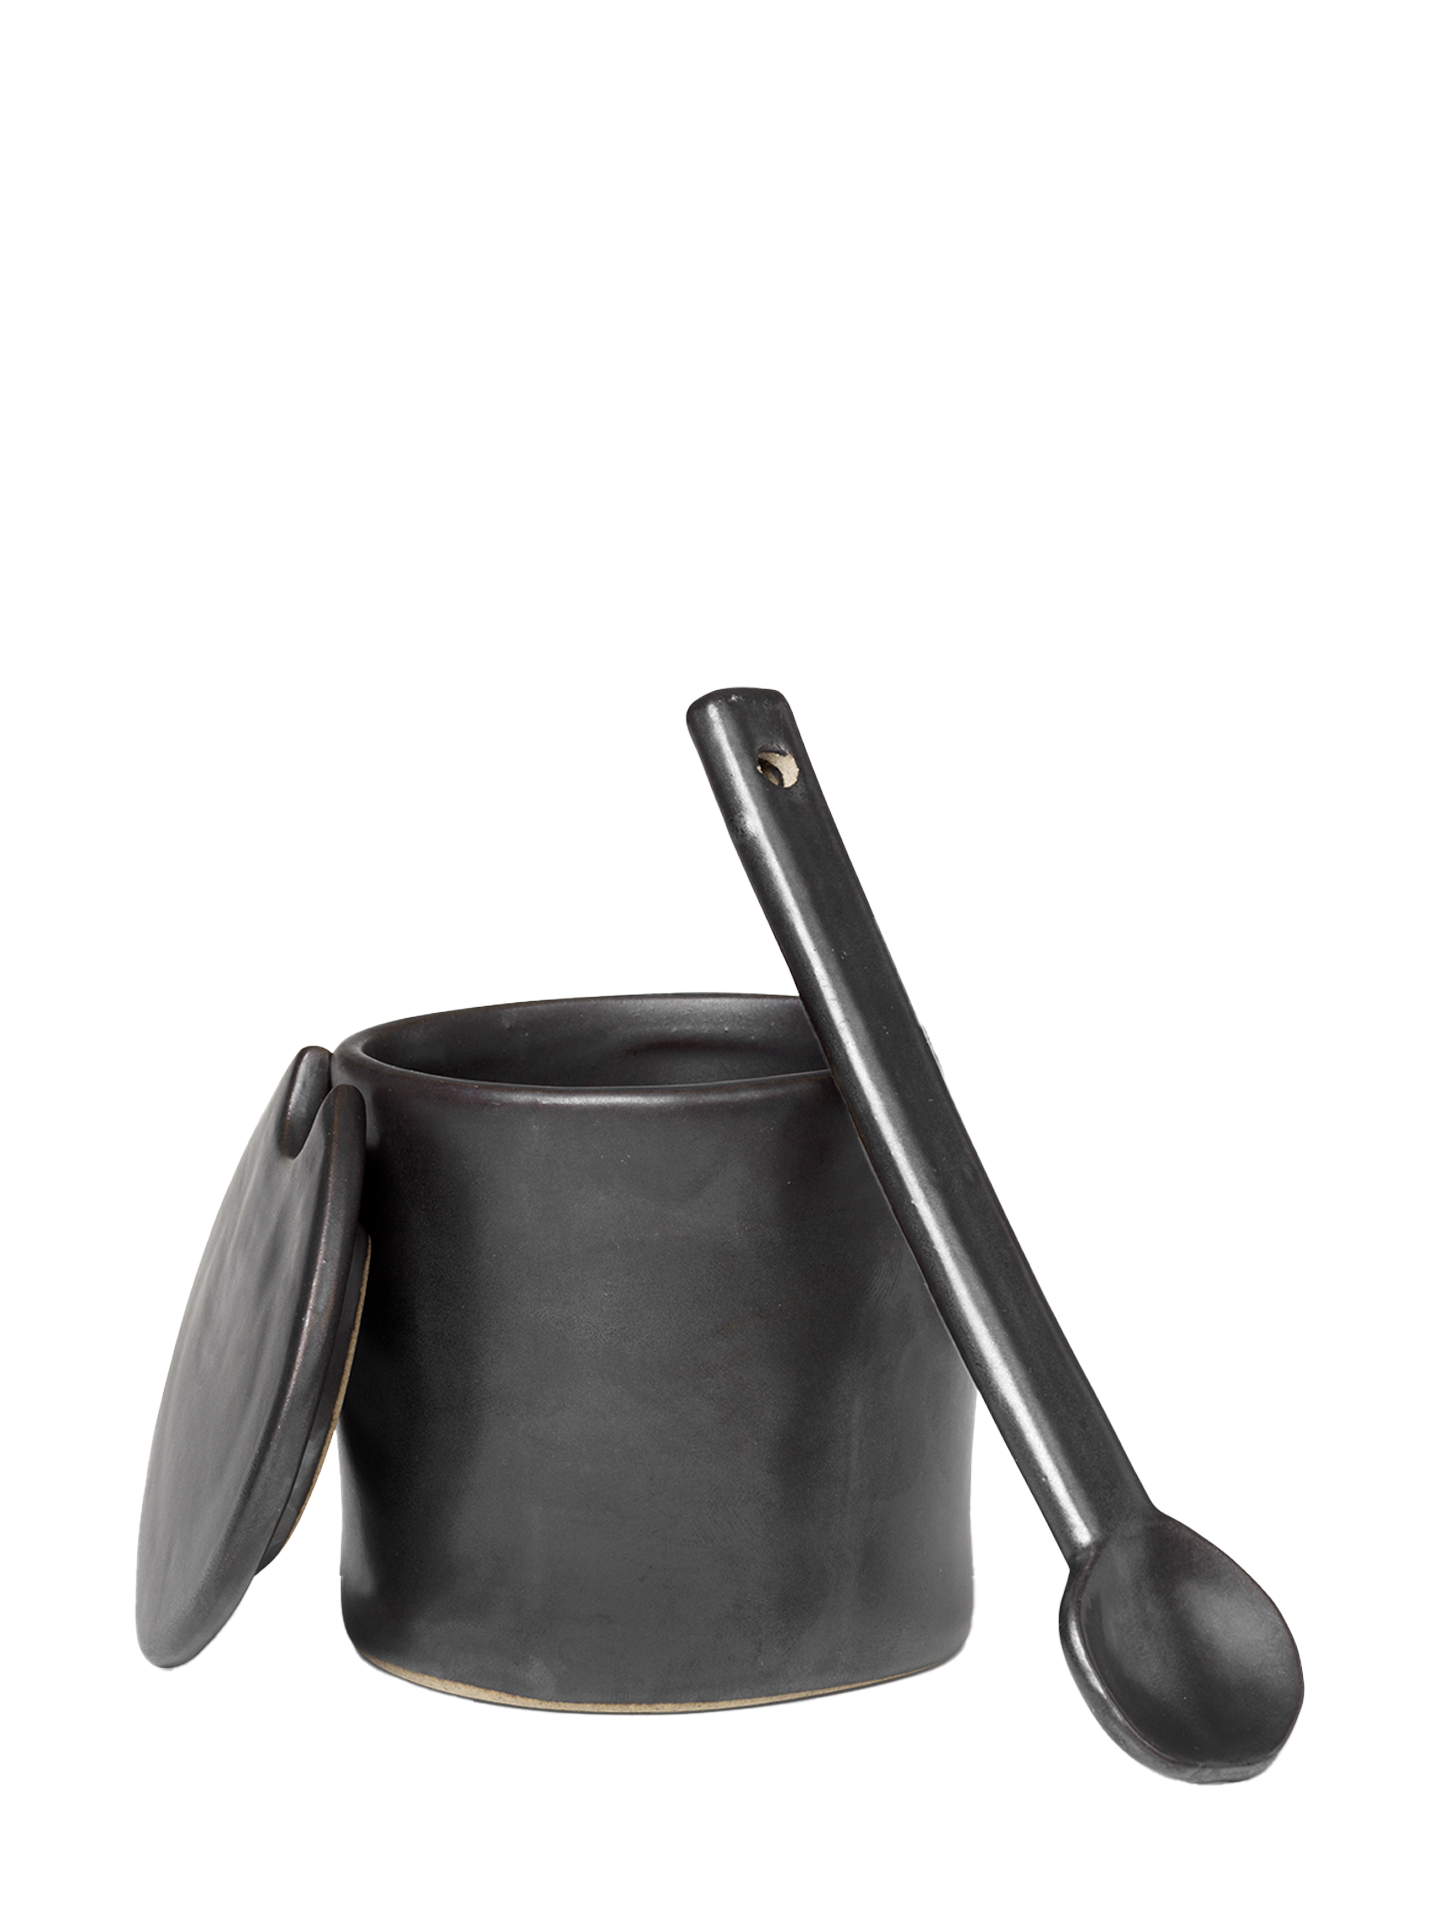 Flow Jar with spoon, Black